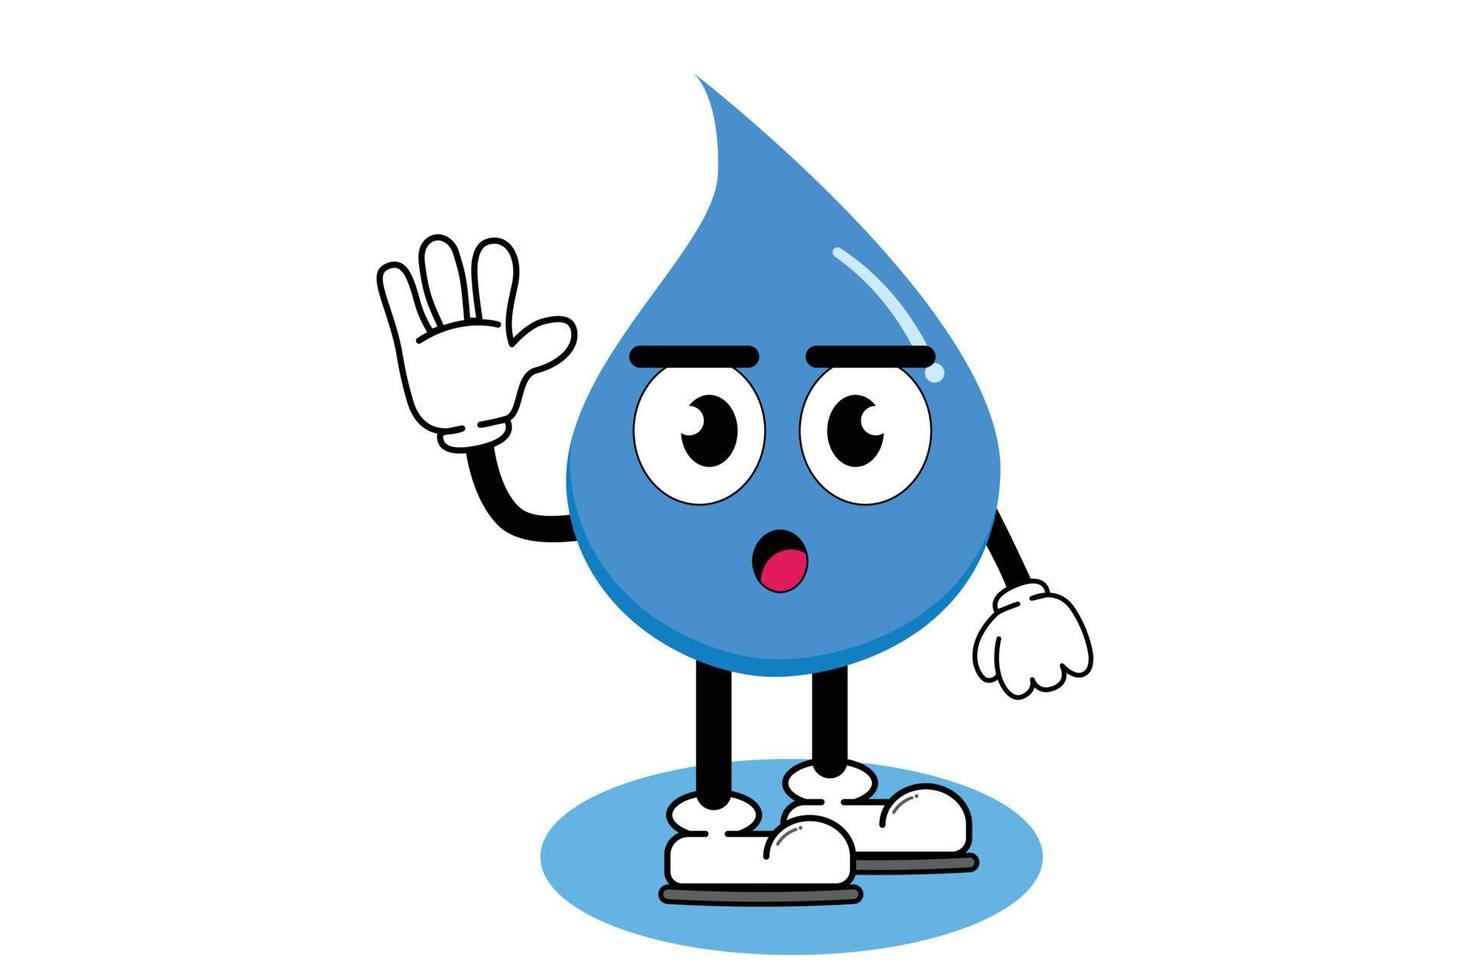 ilustración vectorial personaje de dibujos animados gráficos de linda mascota agua con pose. adecuado para la ilustración de libros infantiles y el diseño de elementos. vector